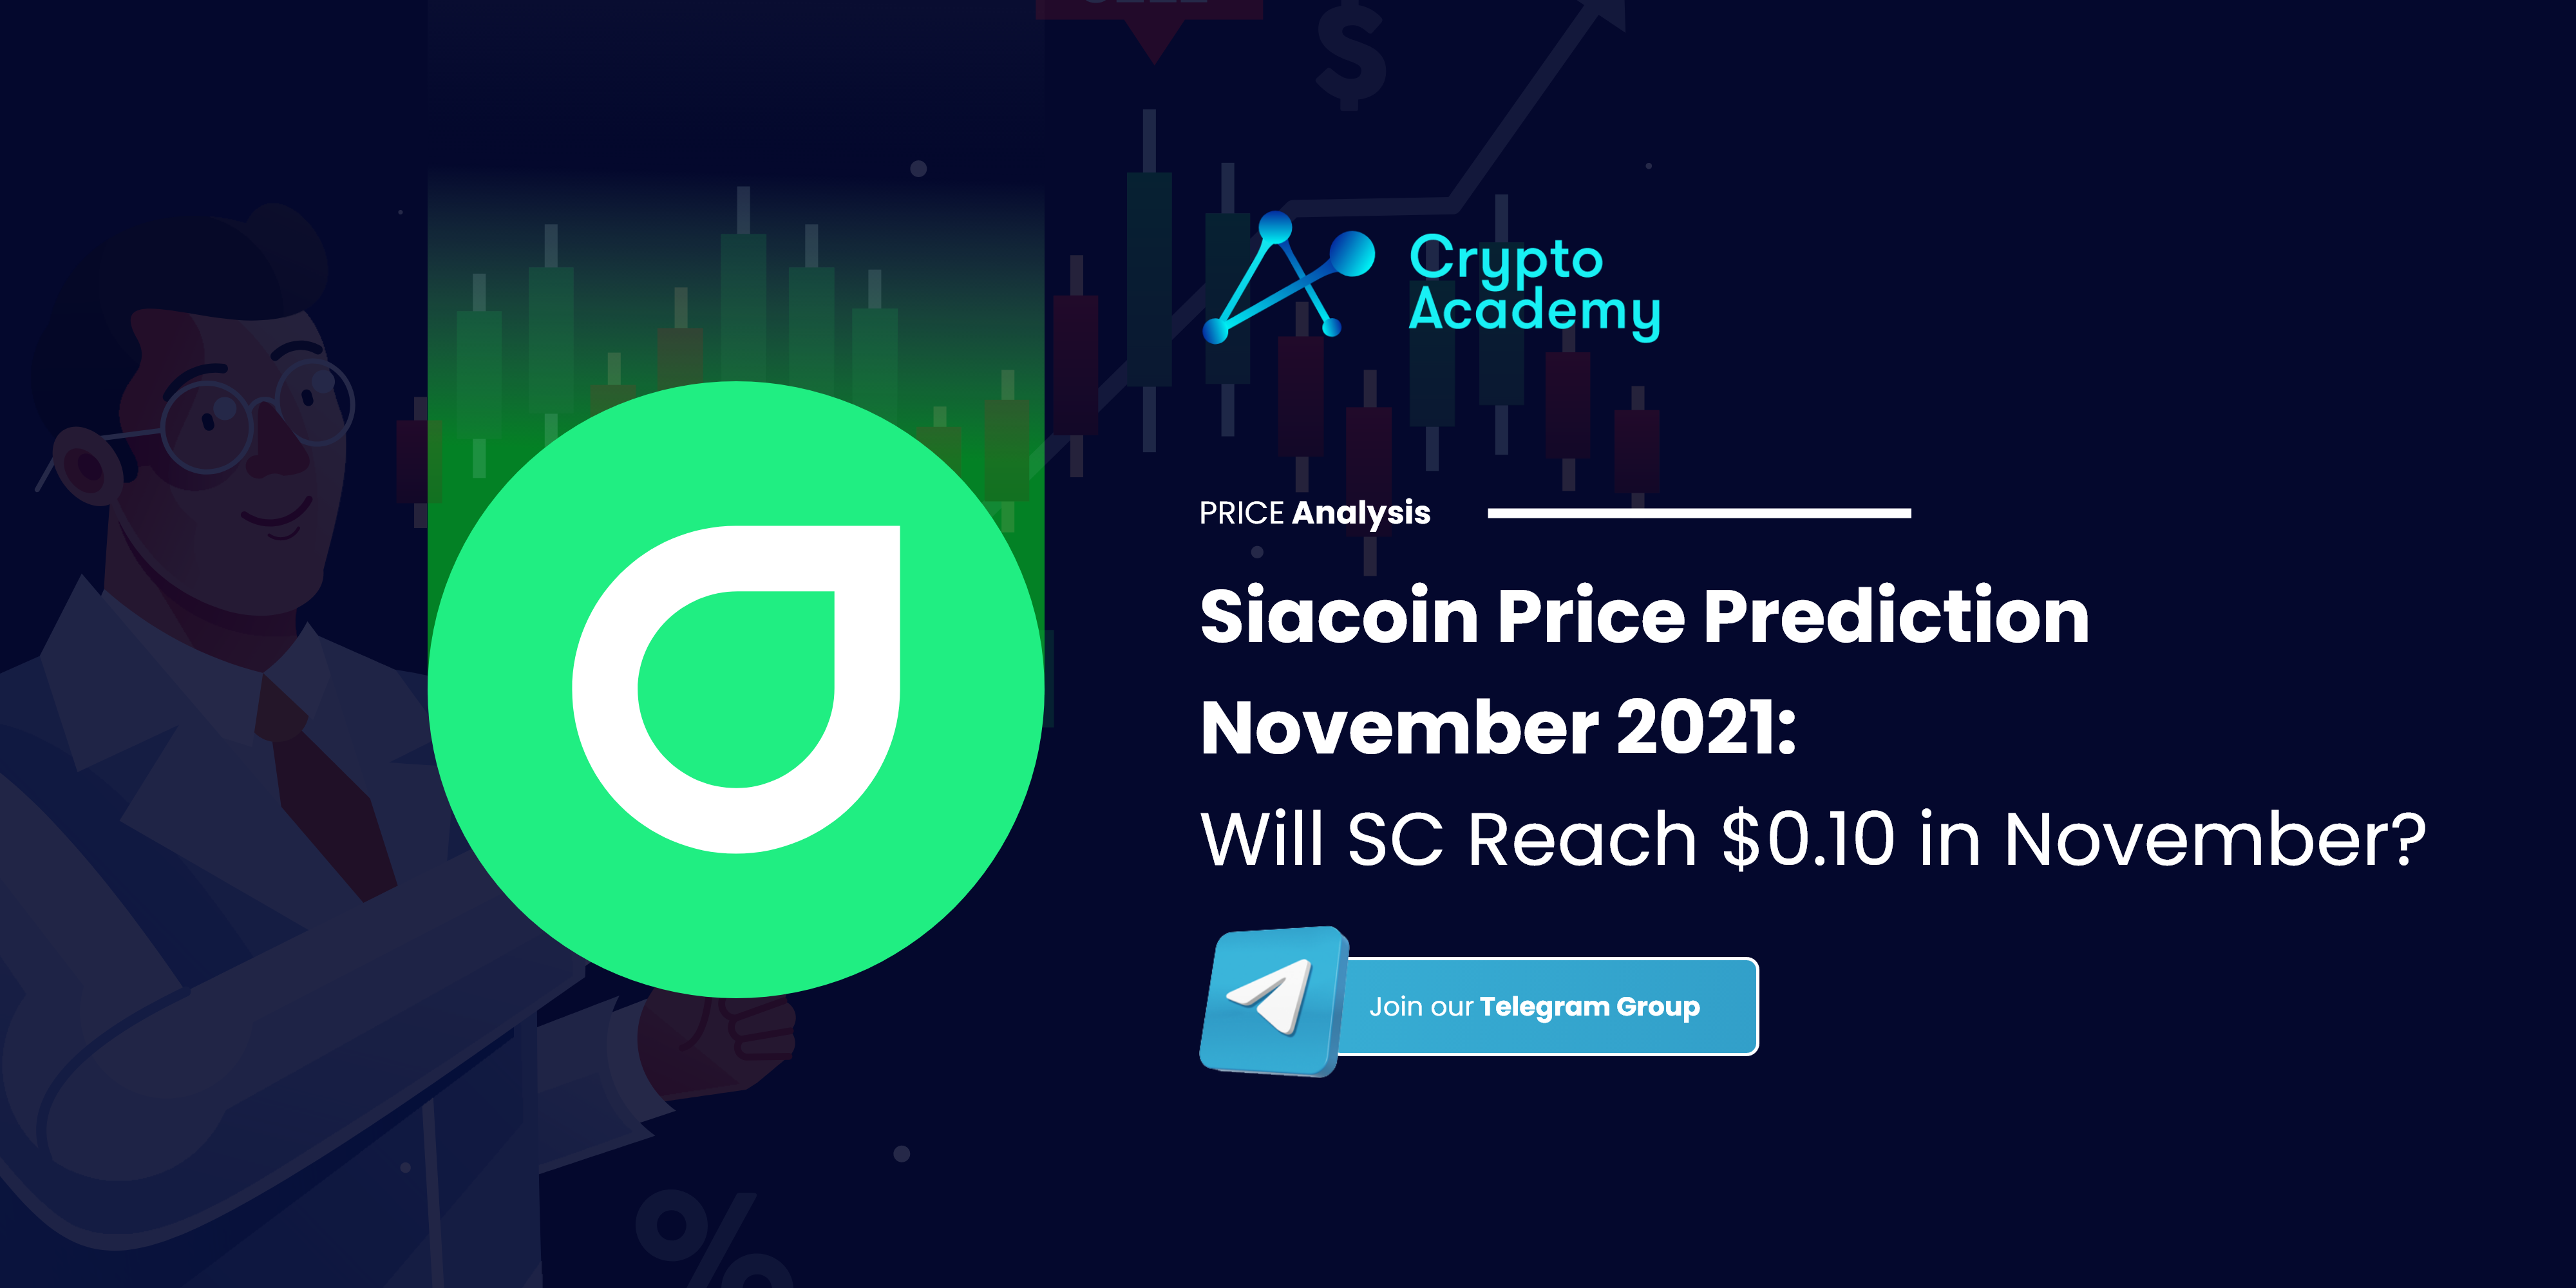 Siacoin Price Prediction November 2021: Will SC Reach $0.10 in November?